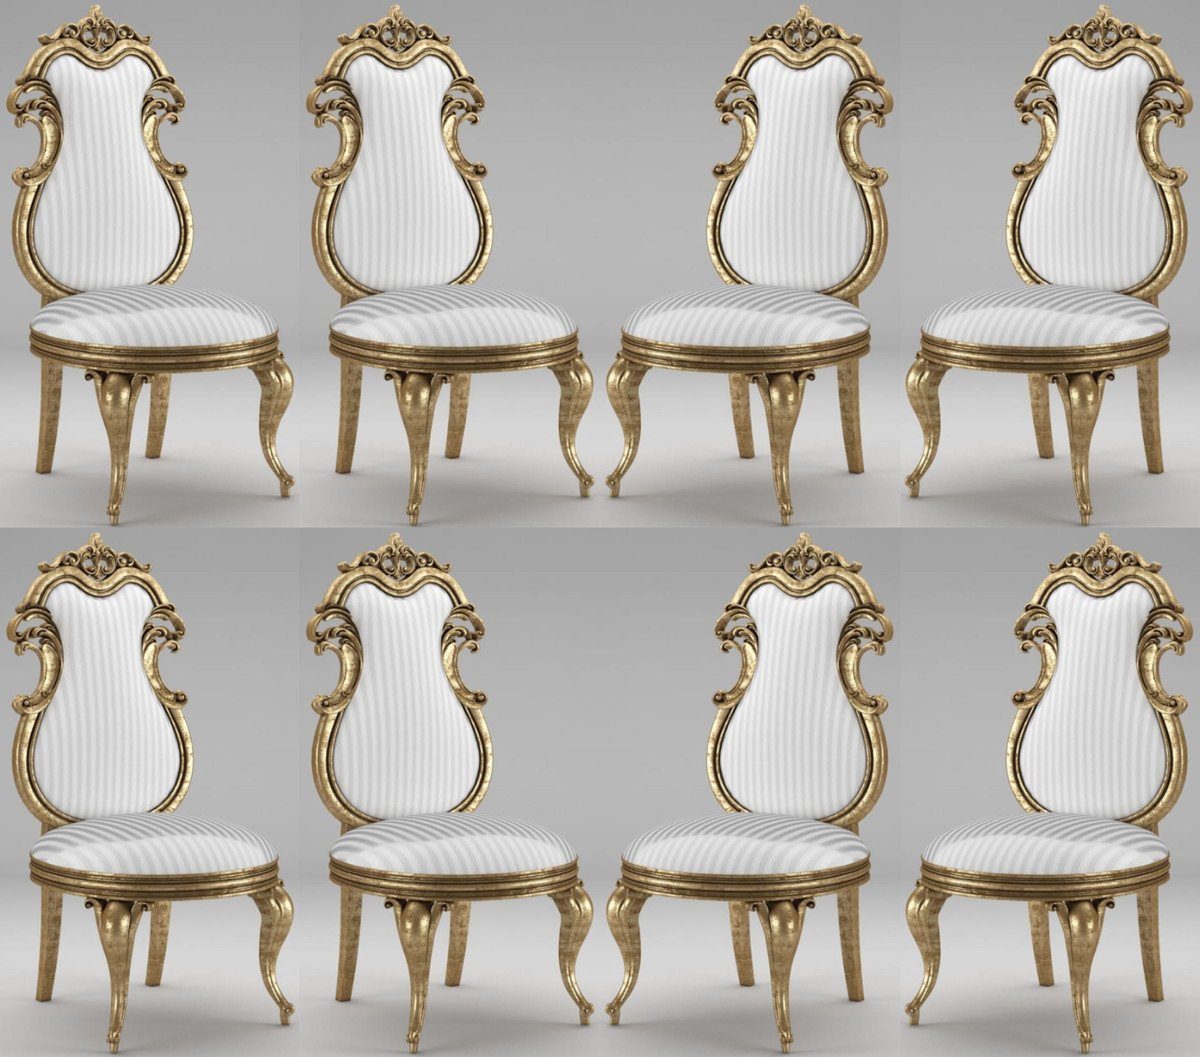 Casa Padrino Esszimmerstuhl Luxus Barock Esszimmer Stuhl Set Weiß / Silber / Antik Gold 55 x 55 x H. 120 cm - Prunkvolle gestreifte Küchen Stühle - Barock Stühle 8er Set - Esszimmer Möbel